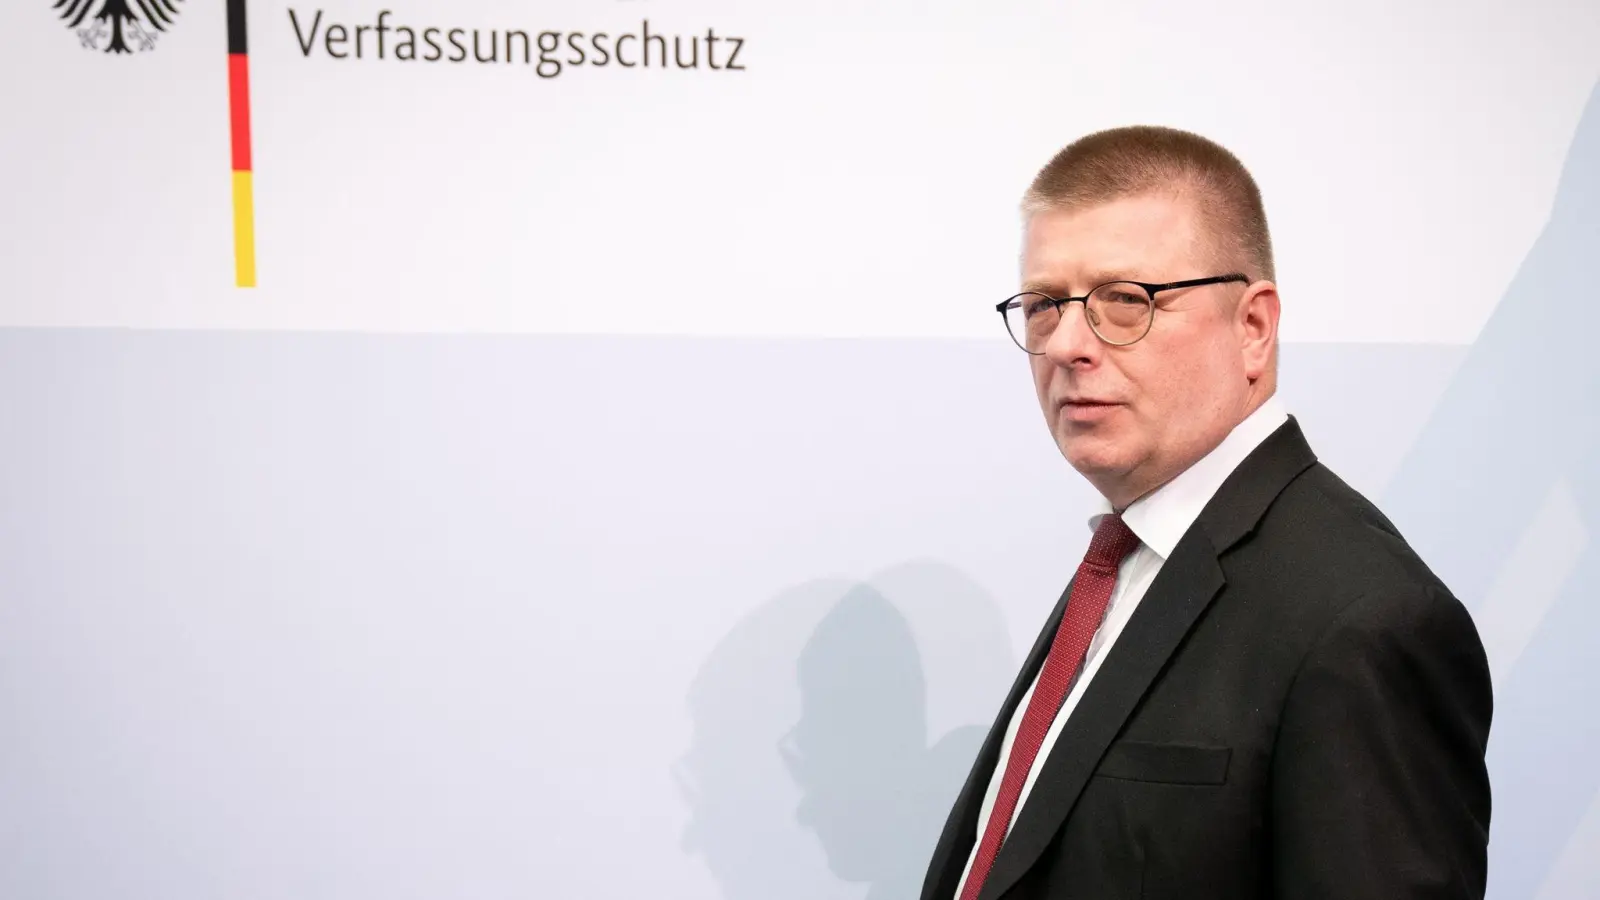 Thomas Haldenwang ist Präsident des Bundesamts für Verfassungsschutz. (Foto: Kay Nietfeld/dpa)